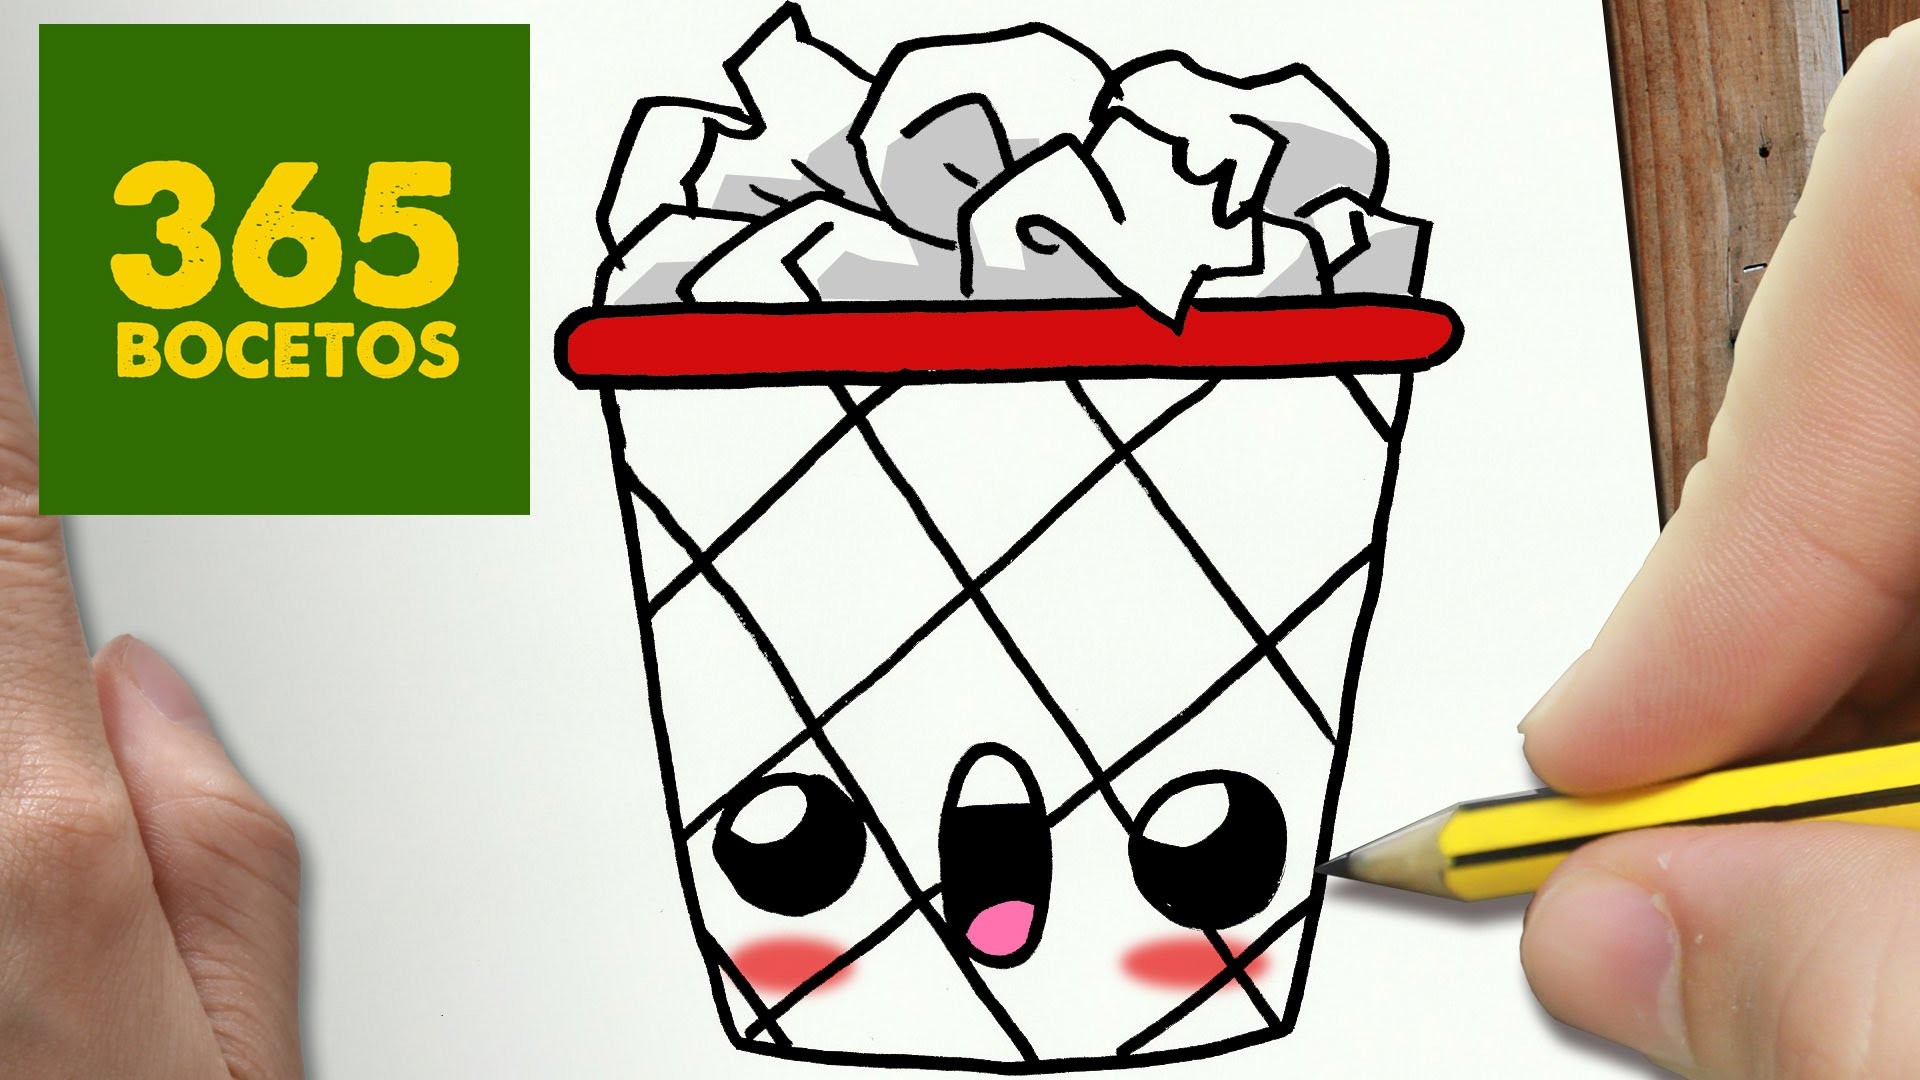 COMO DIBUJAR PAPELERA KAWAII PASO A PASO - Dibujos kawaii faciles - How to draw a paper bin